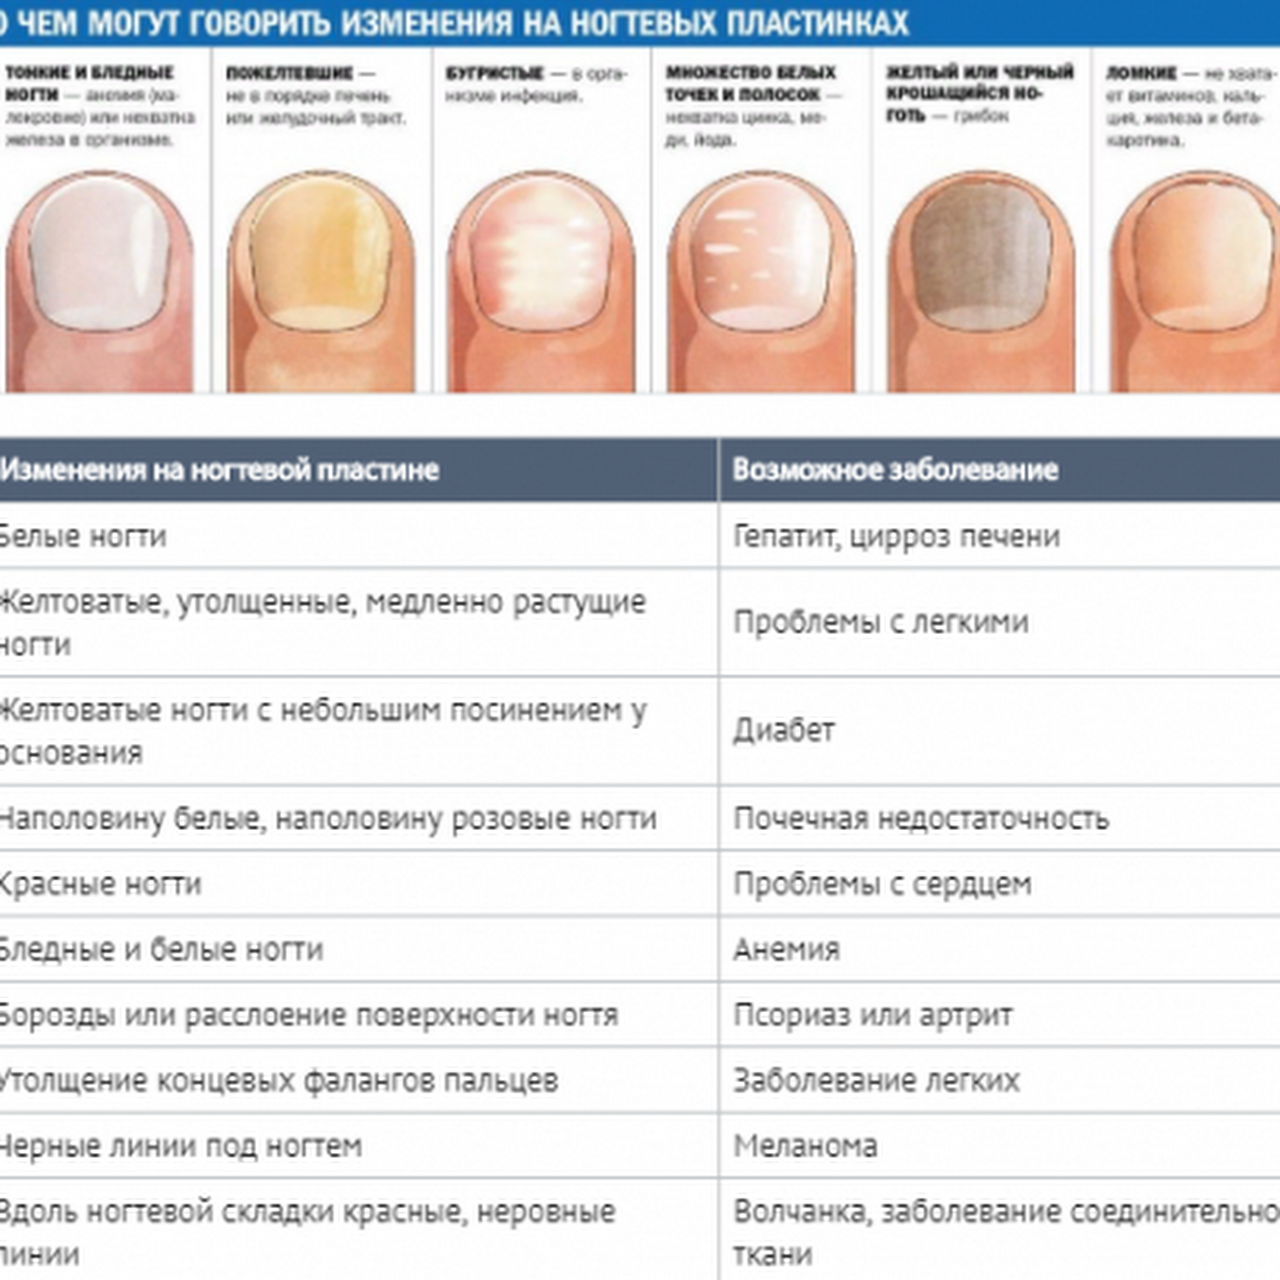 Почему ногти стали тоньше. Определение болезни по состоянию ногтей. Заболевания ногтей на руках таблица описание. Как определить по цвету ногтей заболевание. Выявление болезни по ногтям.